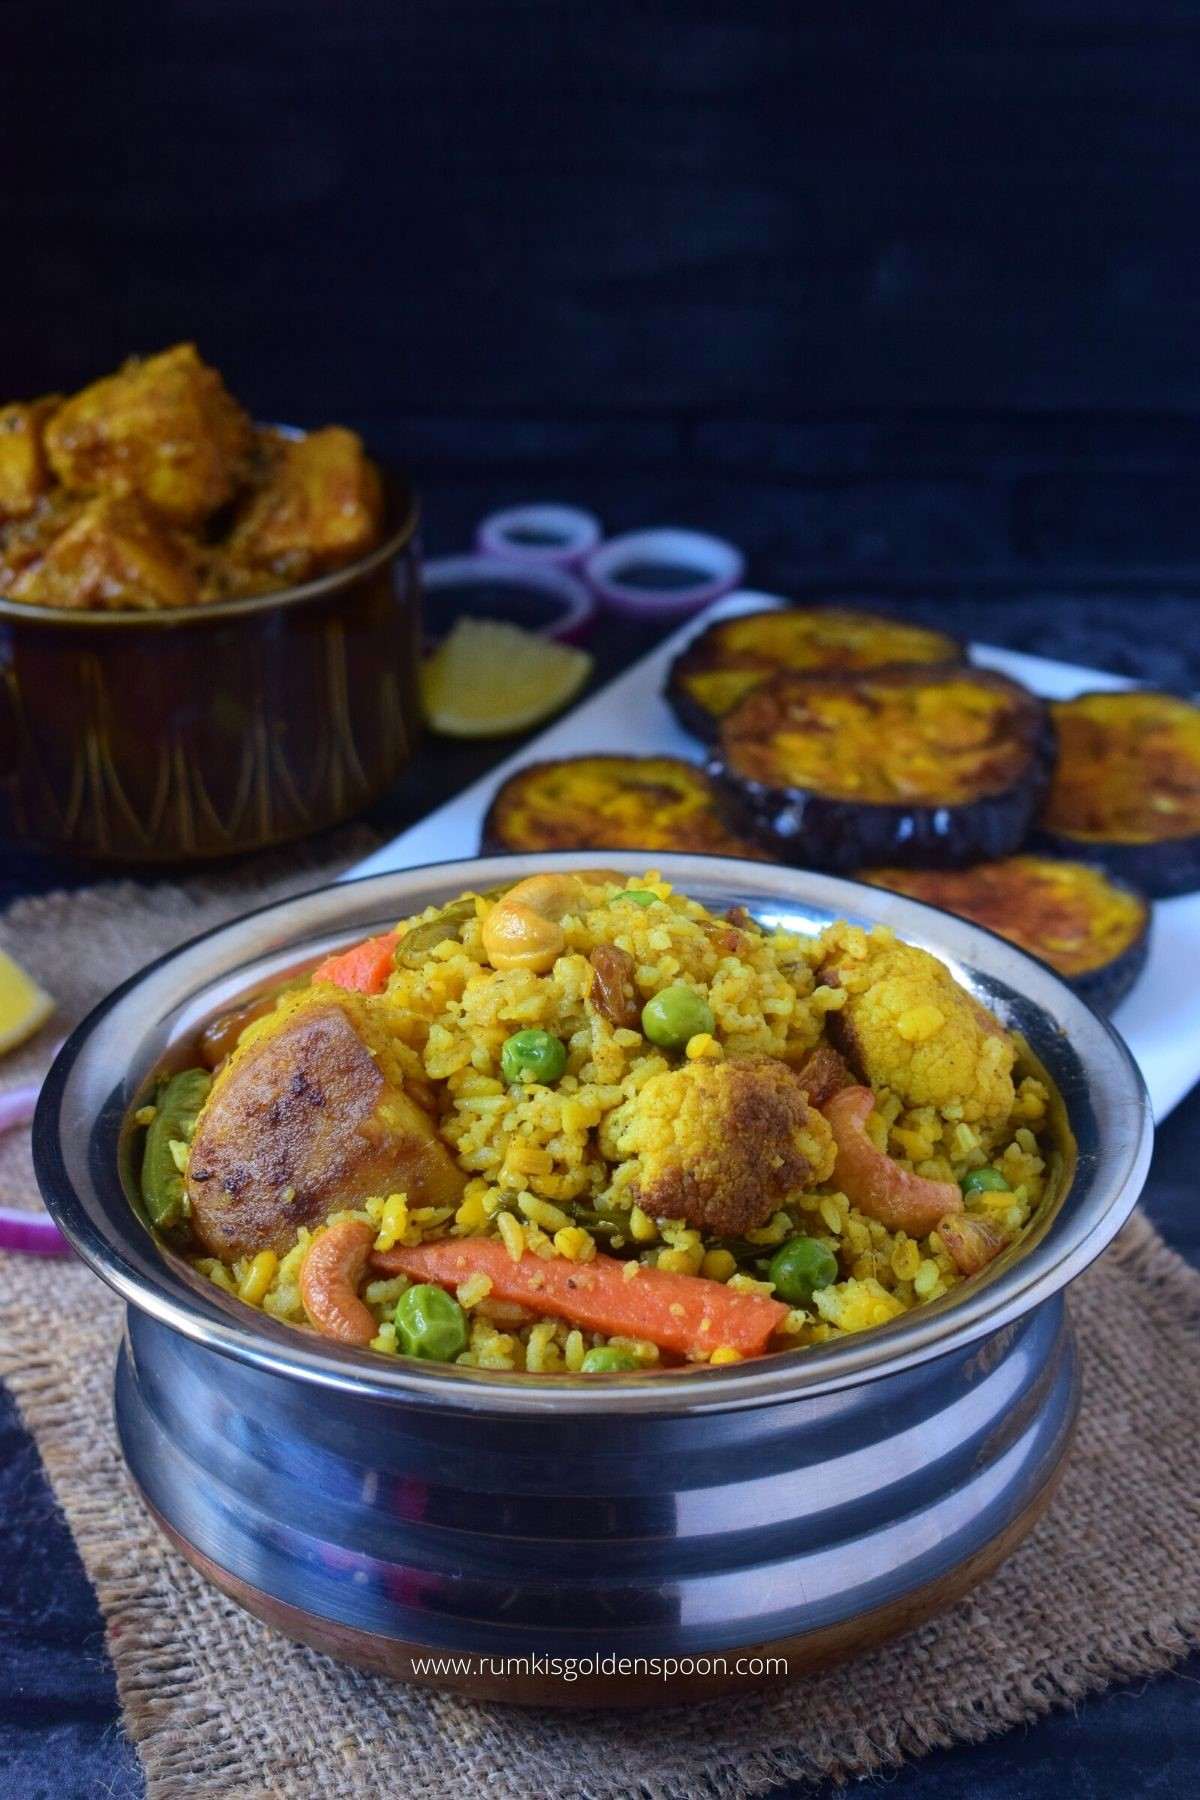 bhuni khichuri, bhuni khichuri recipe, bhuna khichuri, bhuna khichuri recipe, bengali bhuna khichuri recipe , bhuna khichuri recipe bengali, how to make bhuna khichuri, bhuna khichuri ranna, bhuna khichuri bengali recipe, how to cook bhuna khichuri, vegetable bhuna khichuri, bengali bhuna khichuri, bhuni khichdi, moong daler bhuna khichuri, mug daler bhuna khichuri, how to make bhuni khichuri, bengali bhuni khichuri, niramish bhuni khichuri, bengali bhuna khichdi, jhuro khichuri, mug daler khichuri recipe, niramish khichuri, niramish khichuri recipe, niramish khichuri ranna recipe, bengali khichuri, bengali khichuri recipe, khichuri bengali recipe, recipe for bengali khichuri, bhoger khichuri, bhoger bhuna khichuri, bhoger bhuni khichuri, bengali recipe, bengali recipes, bengali food, bengali food recipes, recipes of bengali food, traditional bengali food, bengali recipes veg, niramish recipe, traditional food of Bengali, bengali veg recipes, bengali vegetarian recipe, without onion garlic recipe, no onion no garlic recipe, Rumki's Golden Spoon